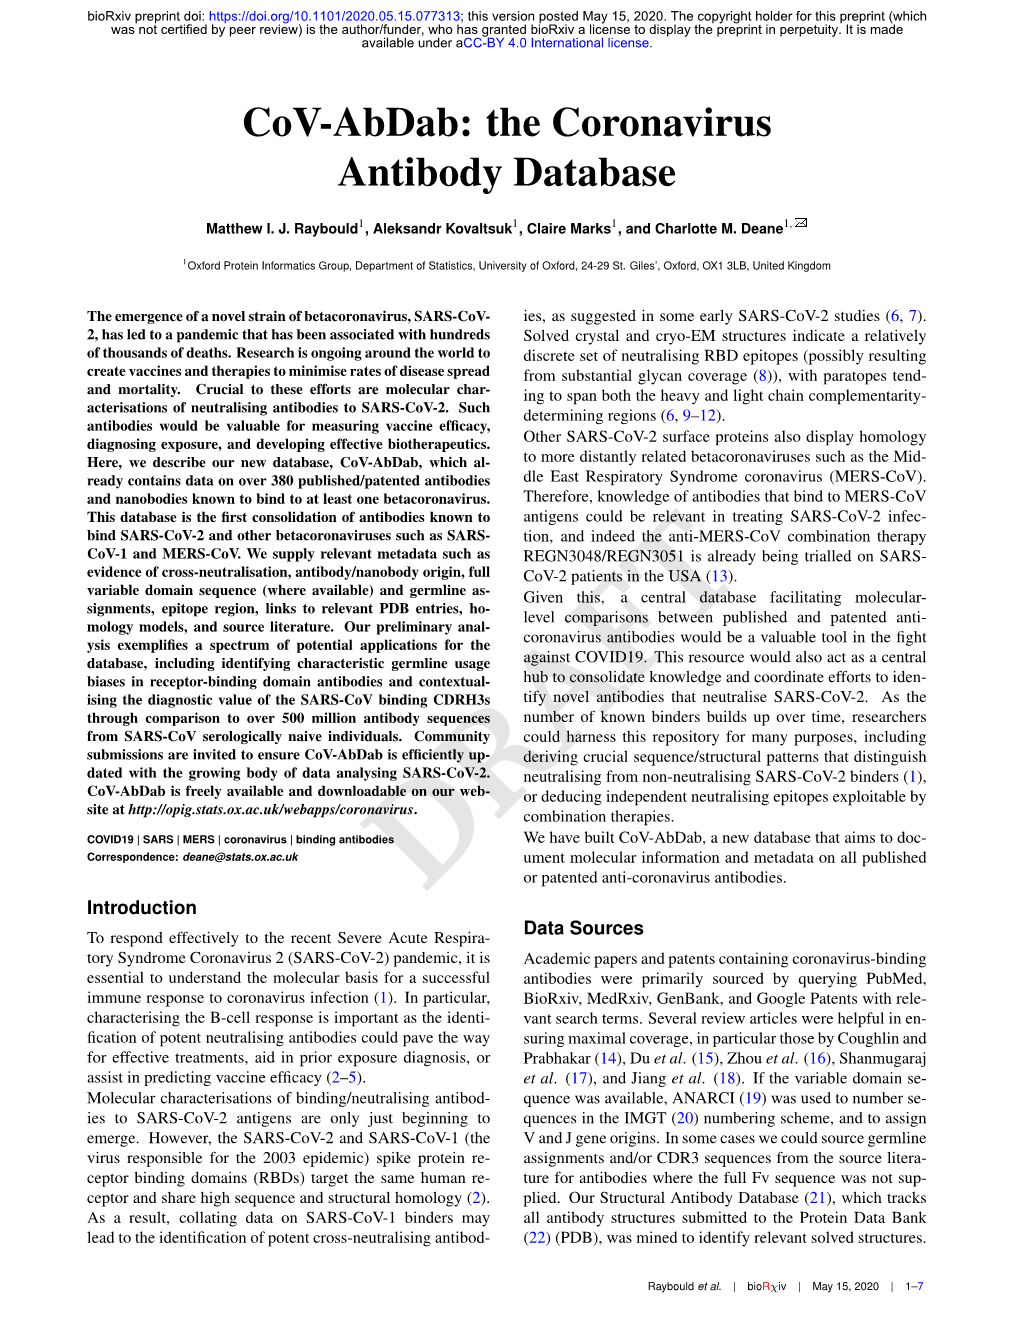 The Coronavirus Antibody Database